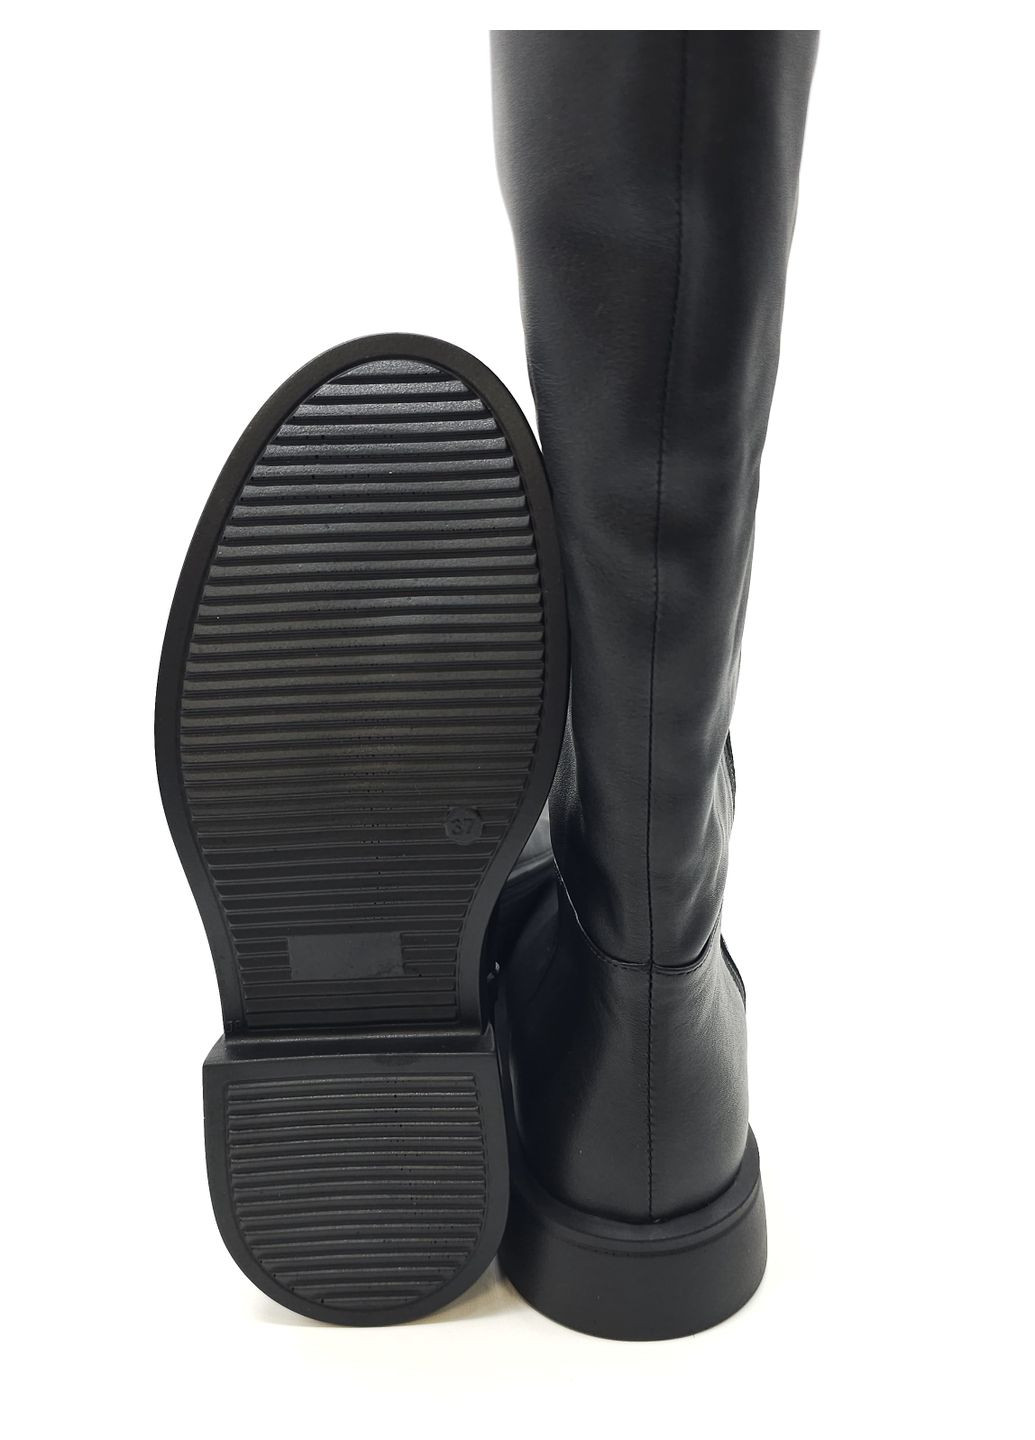 Жіночі чоботи єврозима чорні шкіряні MR-19-1 25,5 см (р) Morento (260379977)